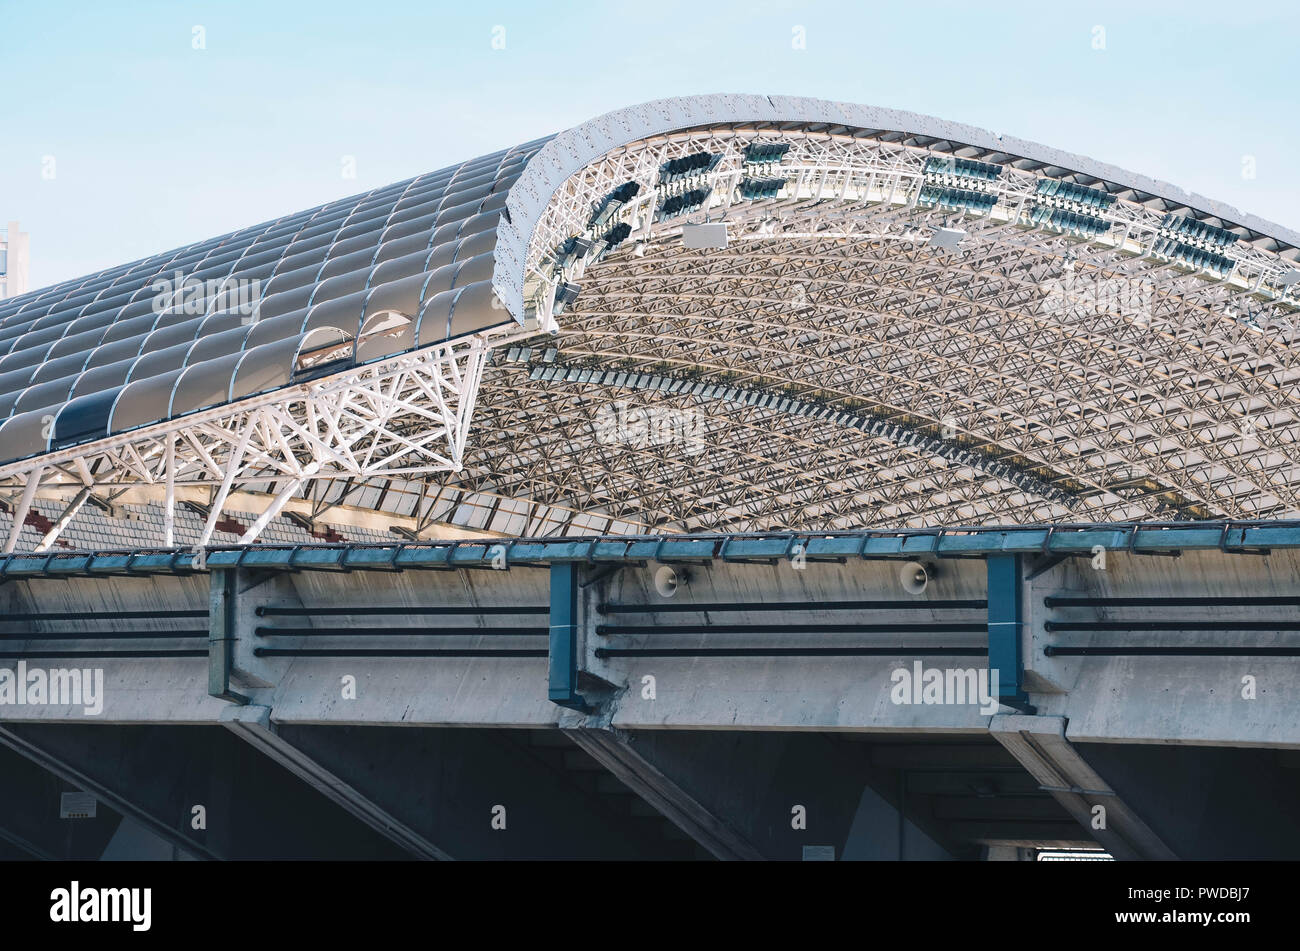 Roof of Poljud stadium, home of Hadjuk Split football club, Split, Croatia, September 2018 Stock Photo